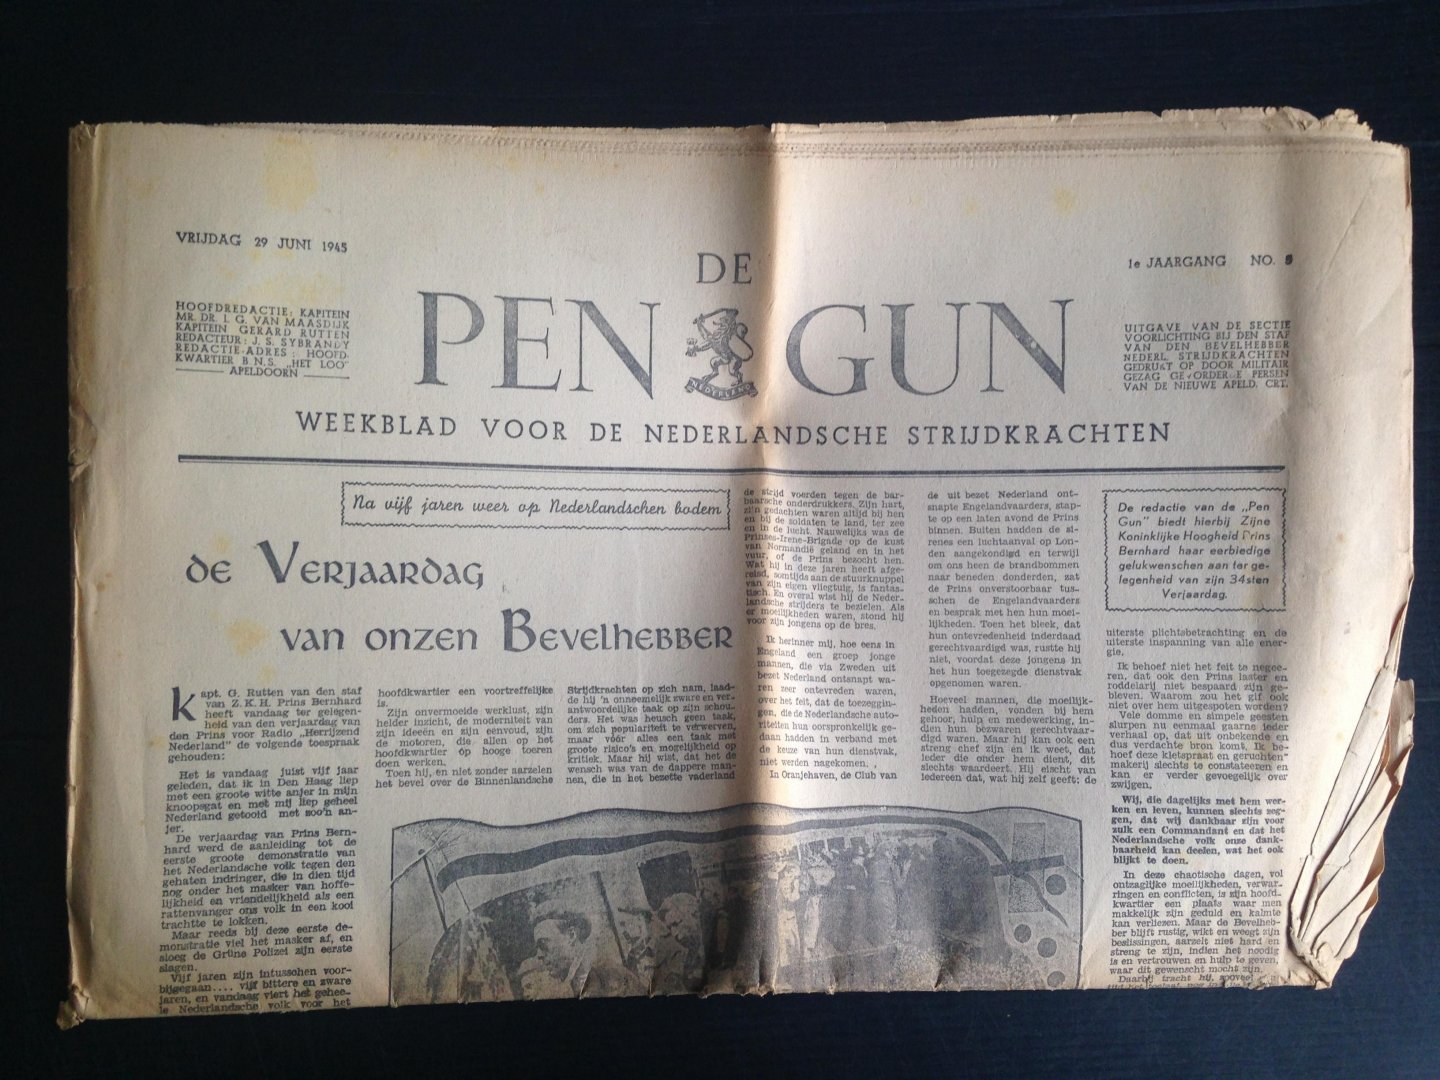  - De Pen Gun, Weekblad voor de Nederlandsche Strijdkrachten